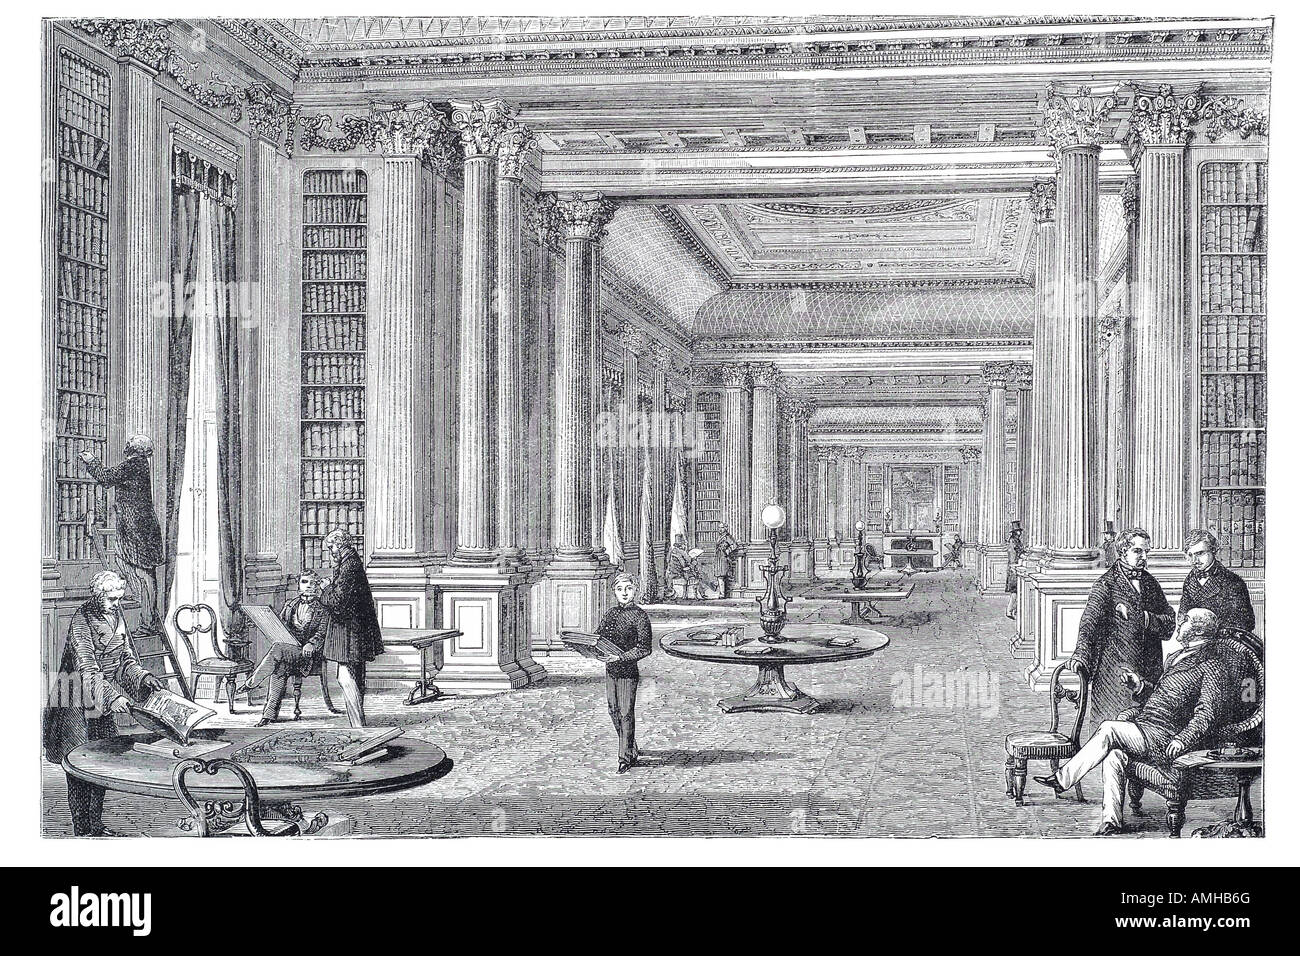 1860 Réforme de la bibliothèque de l'aristocratie du club messieurs Pall Mall Central City urbain royal London Grande-Bretagne Angleterre anglaise en capital plus Banque D'Images